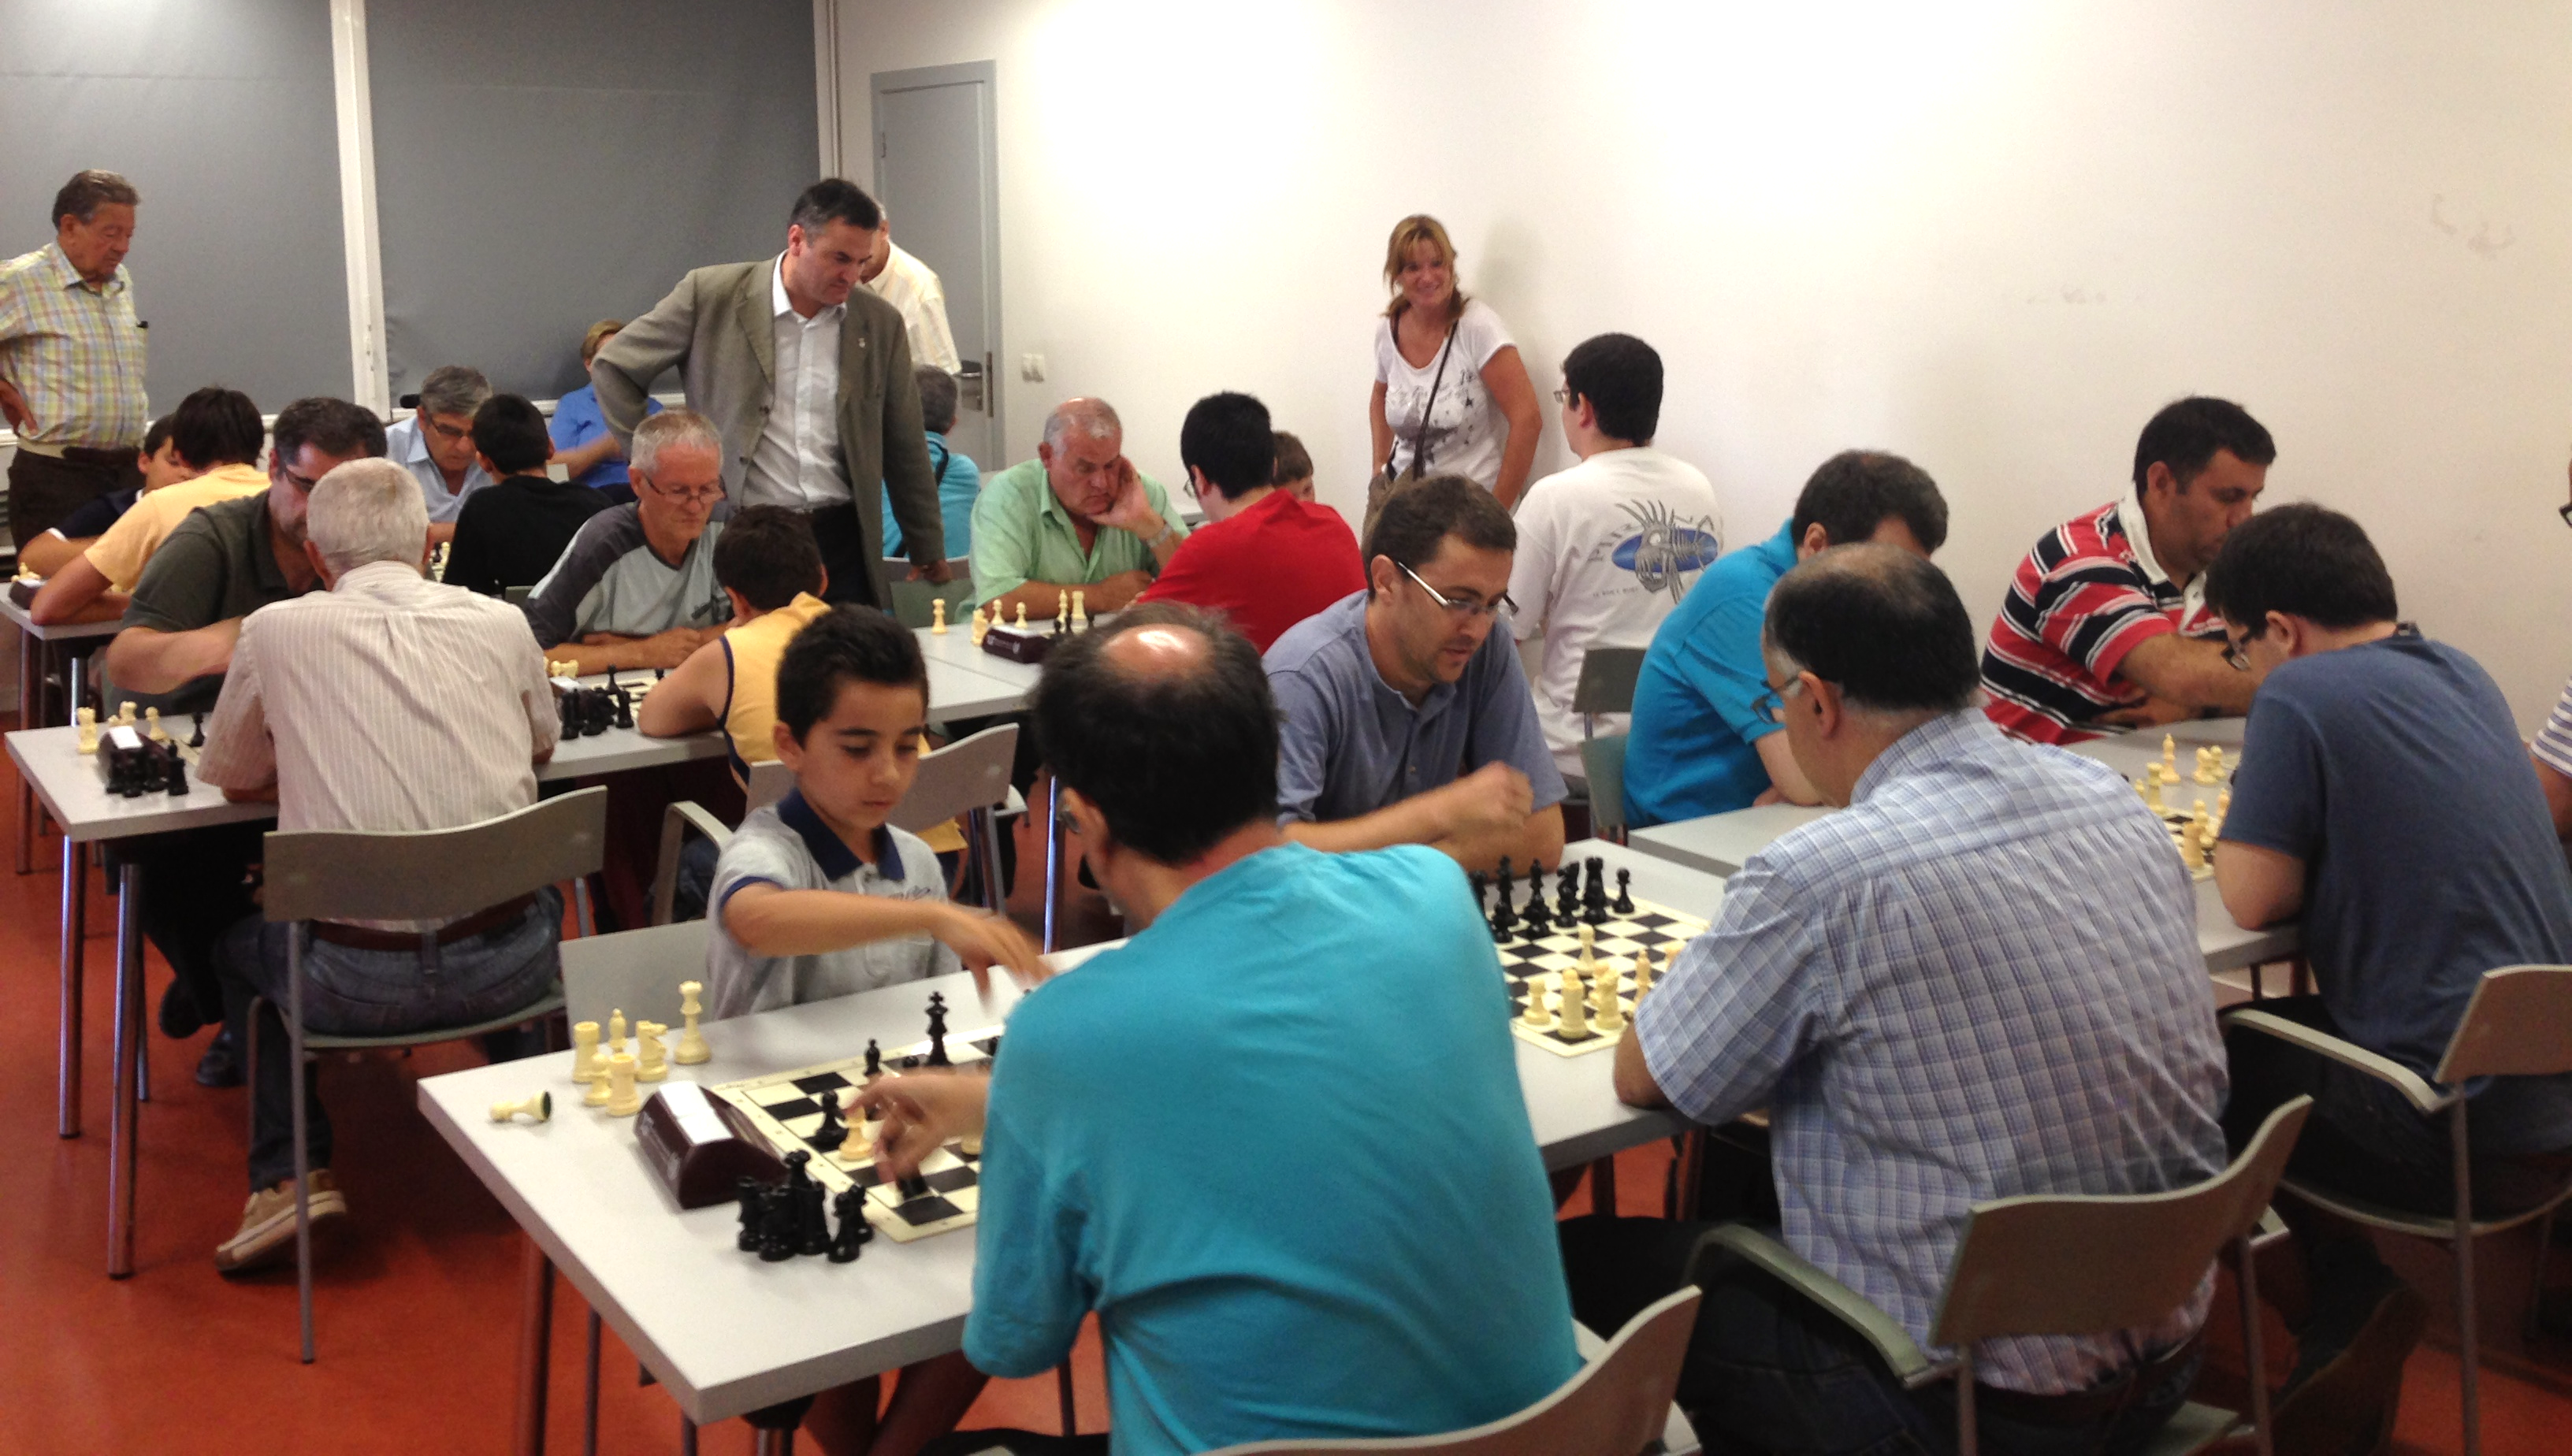 Torneig de rpides d'escacs, dissabte 20 de juliol, a la Bibloteca